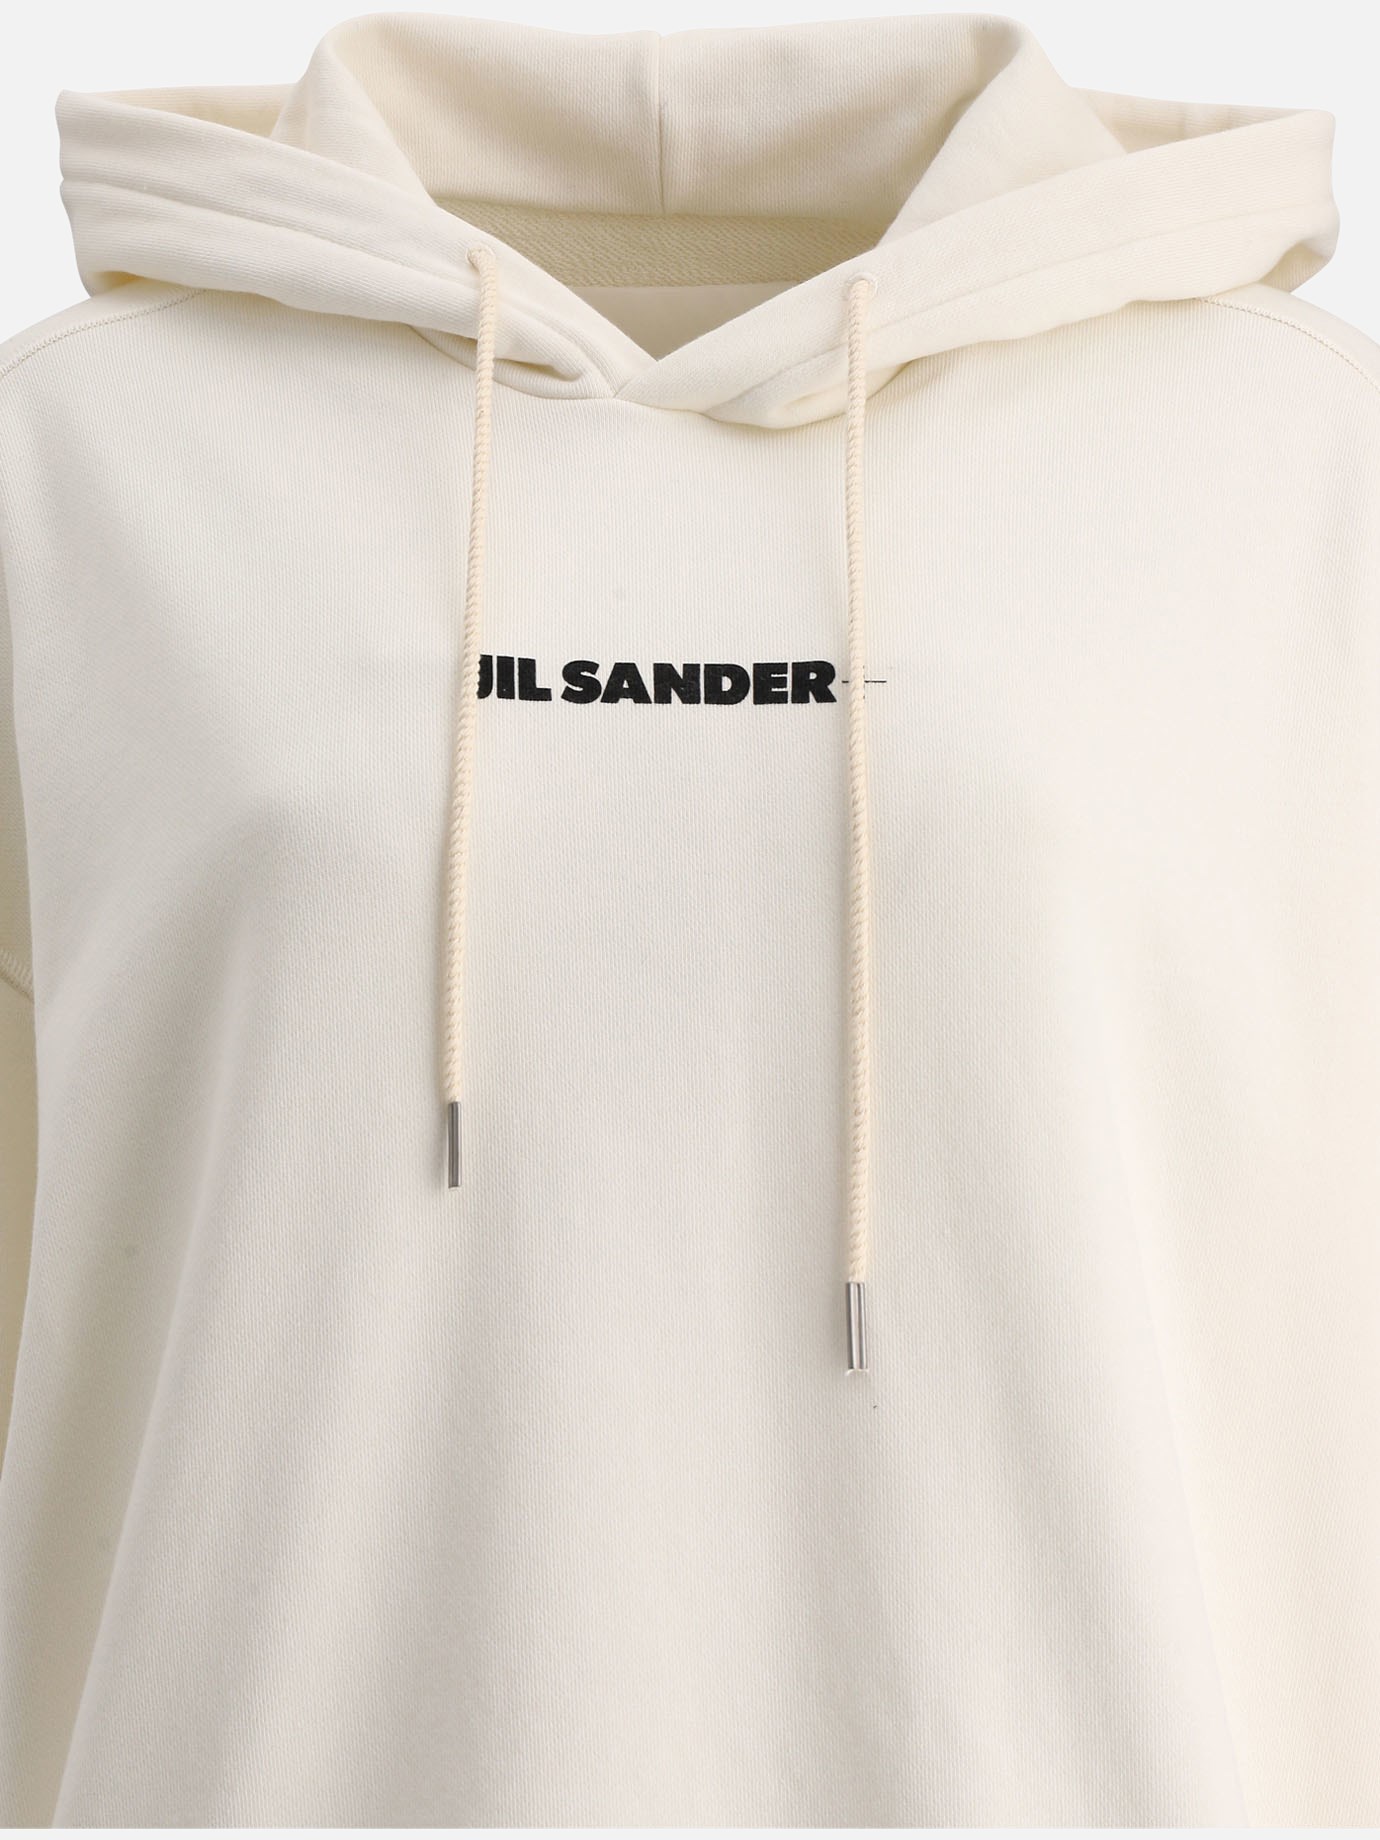  Jil Sander+  hoodie by Jil Sander